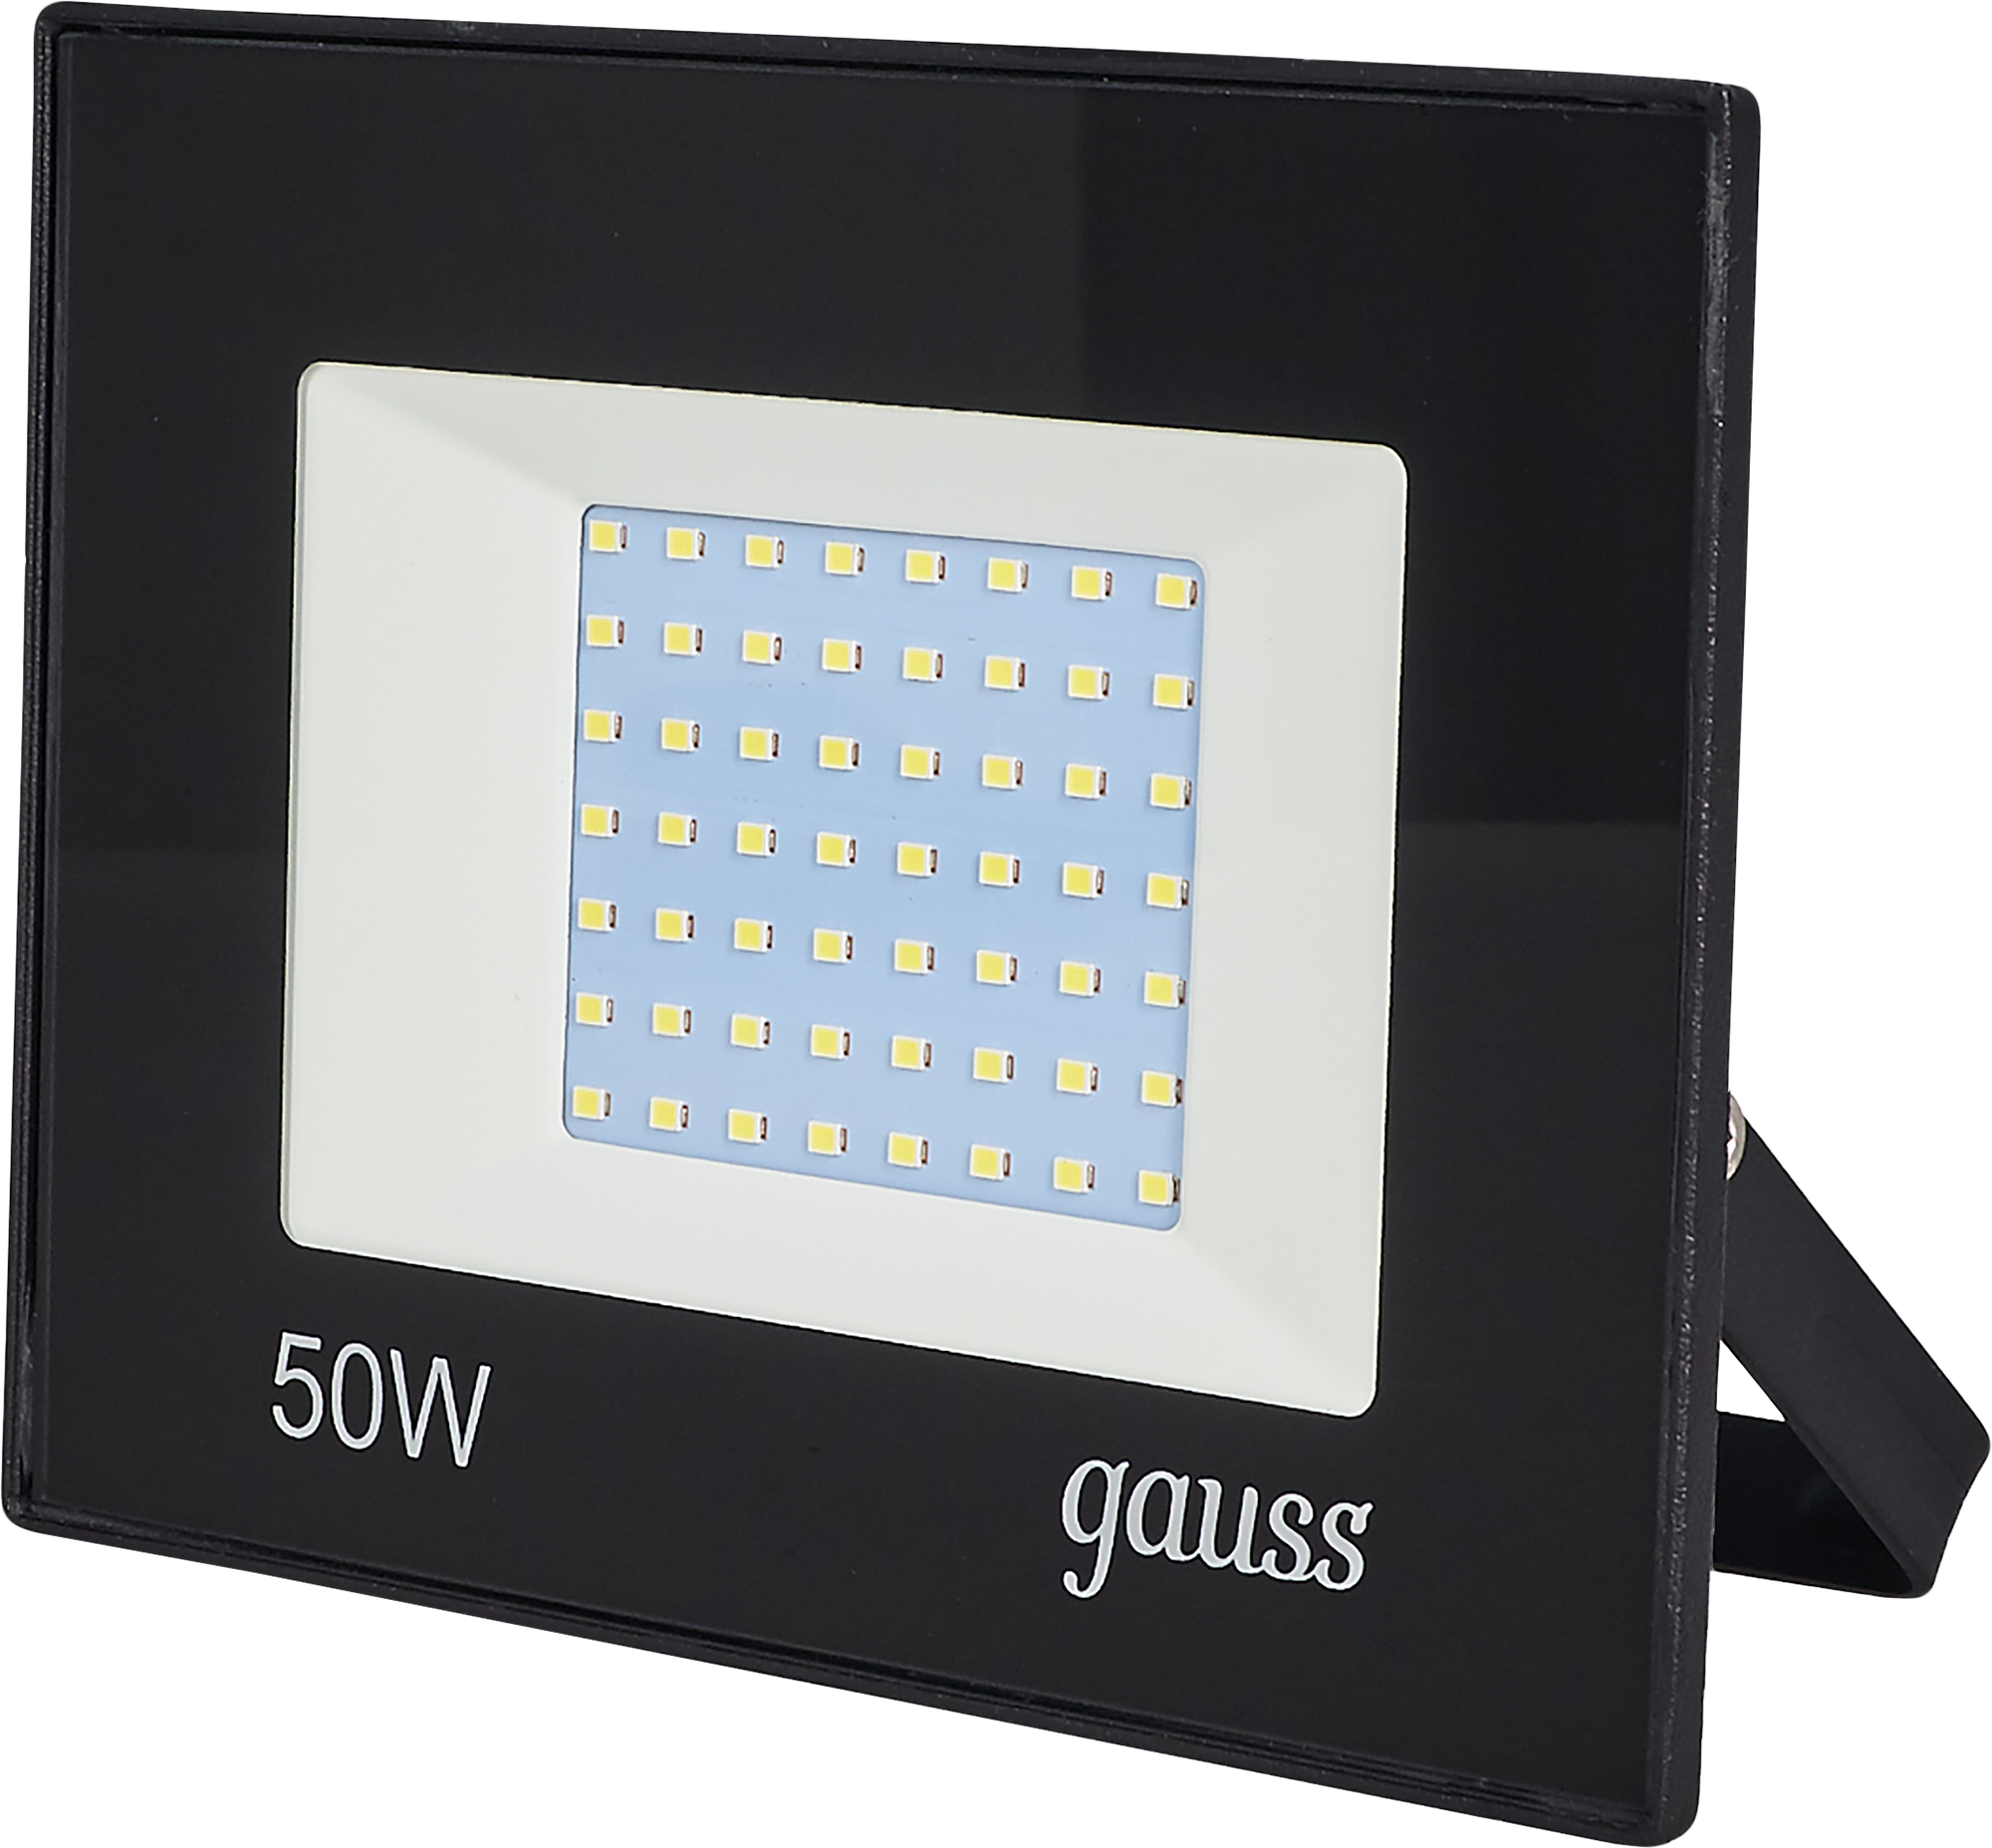 Прожектор 50 Вт Gauss. Gauss Basic прожектор. Прожектор Gauss 50w. Светодиодный прожектор Gauss 100 Вт. Прожектор 50w 6500k